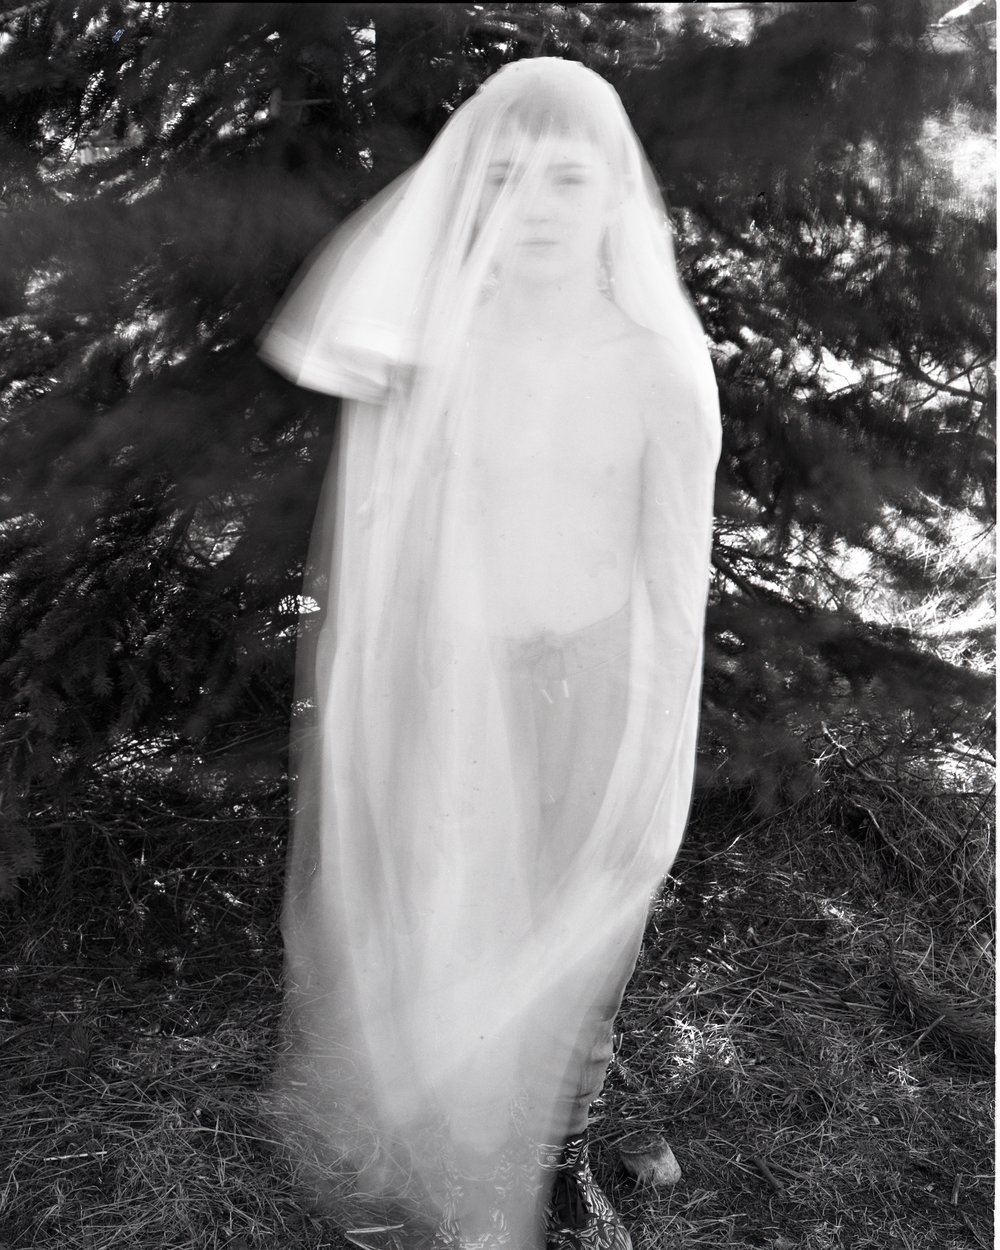  Agnieszka Sosnowska Ghost Boy 